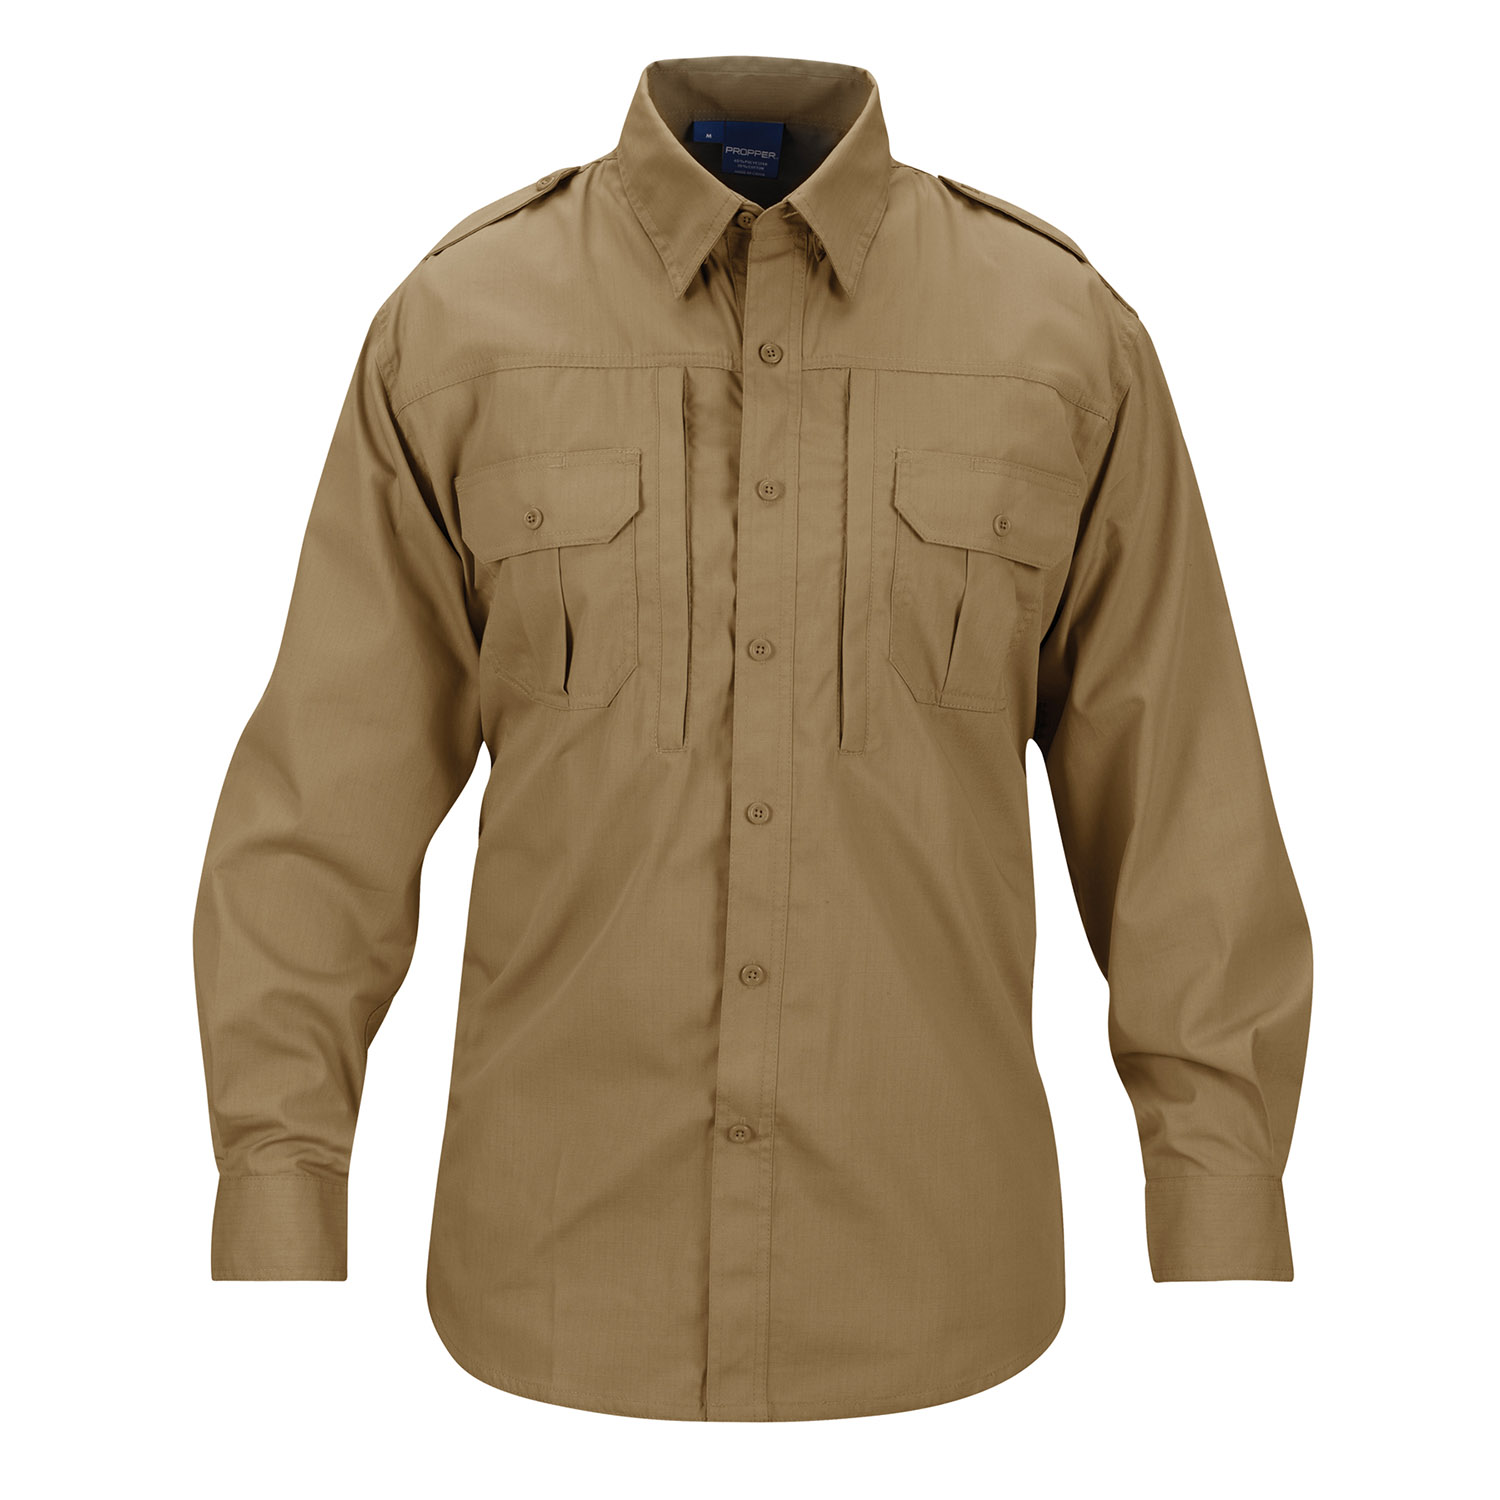 PROPPER Lightweight Tactical Long Sleeve Shirt